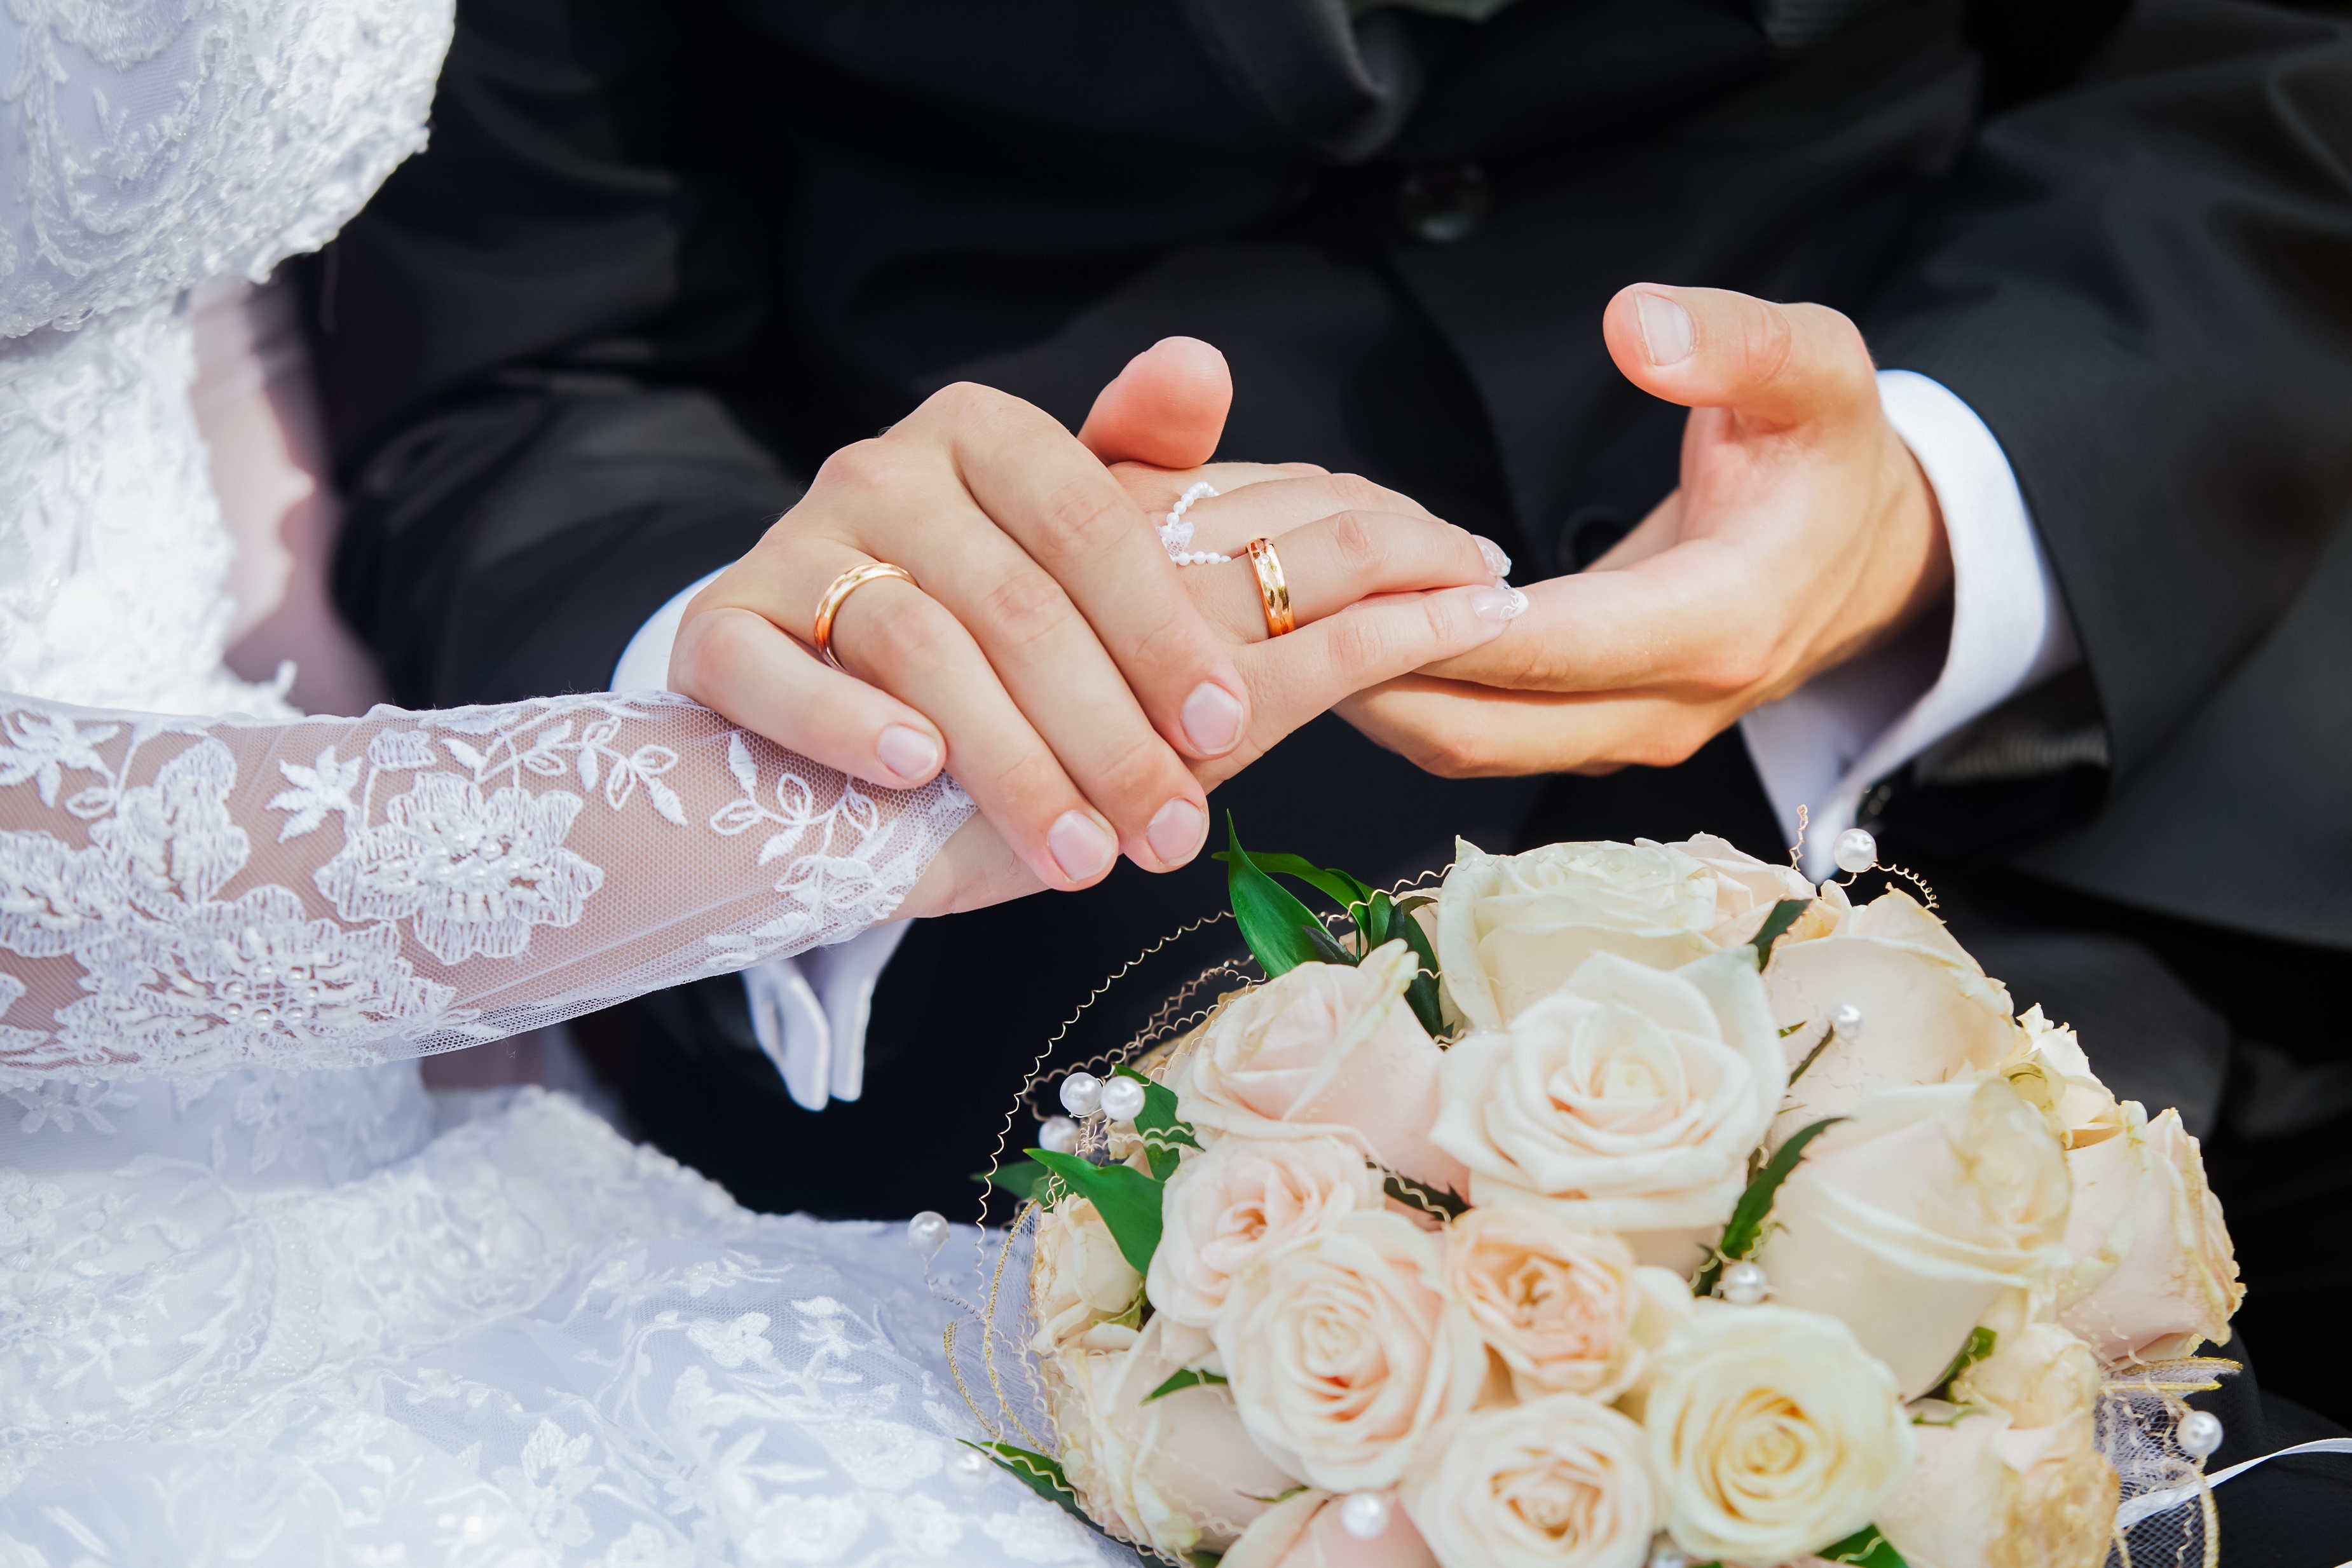 Брачная неделя. Никох узук. Никох узук расм. Кольца жениха и невесты. Невеста на руках у жениха.